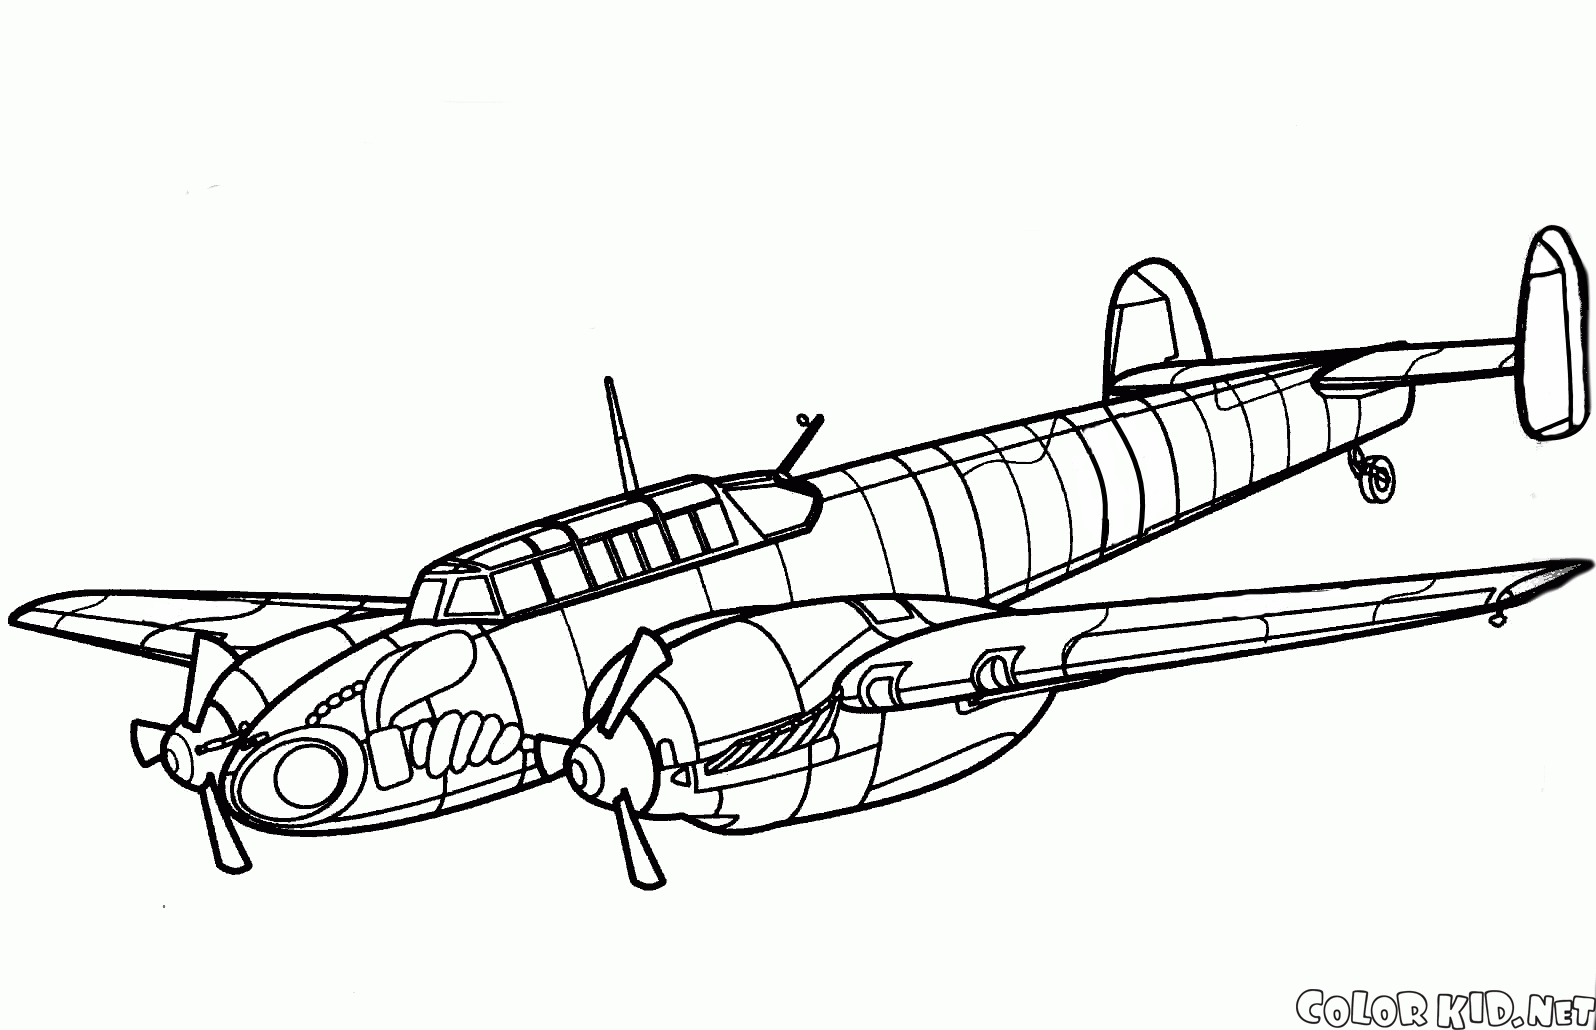 -Messerschmitt-100S 4 / V aviões de caça